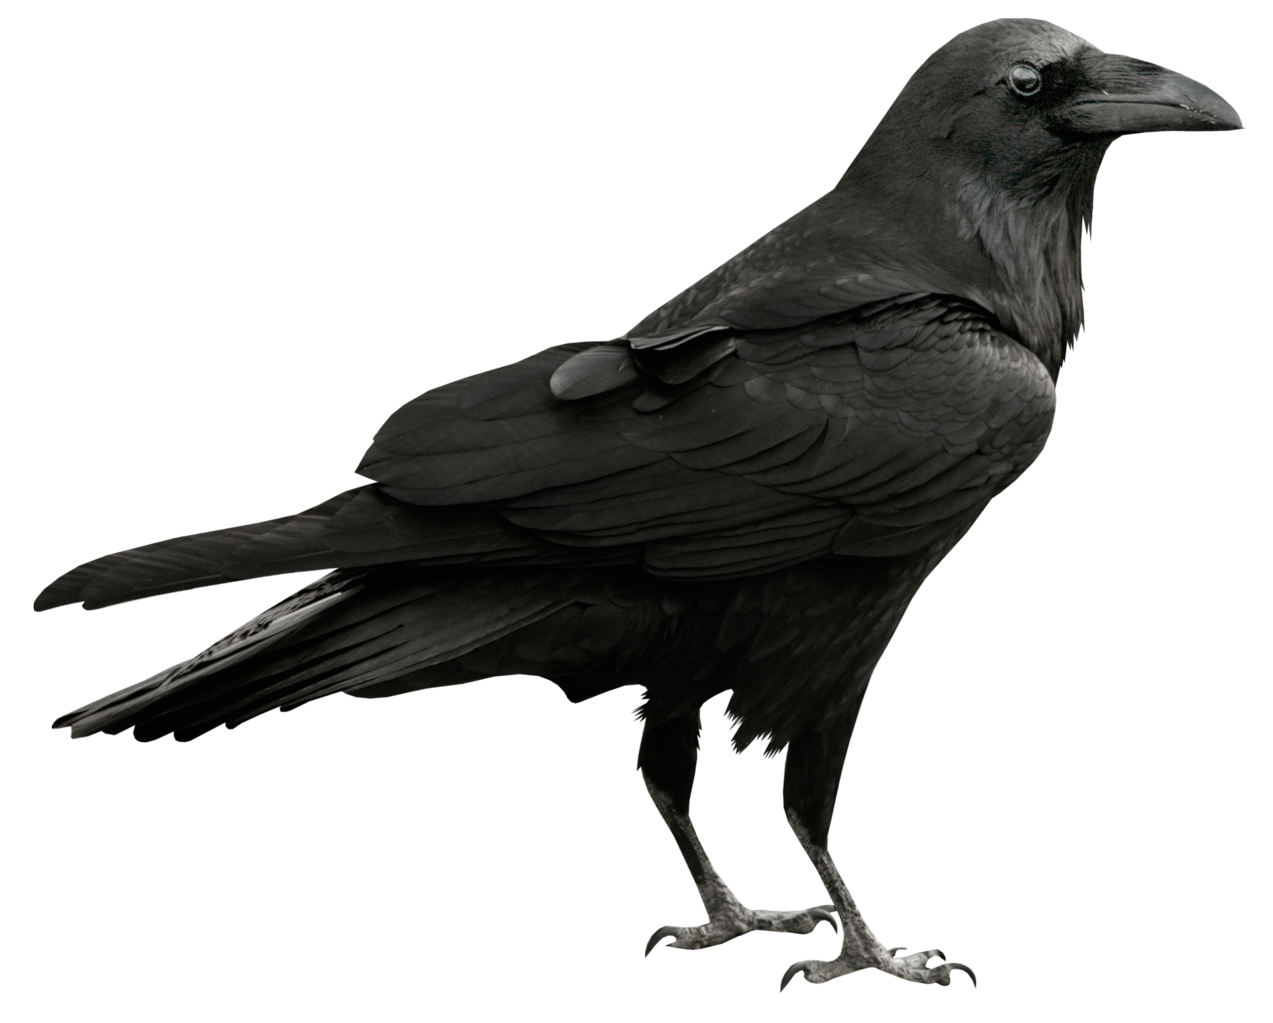 Raven Transparent PNG Picture